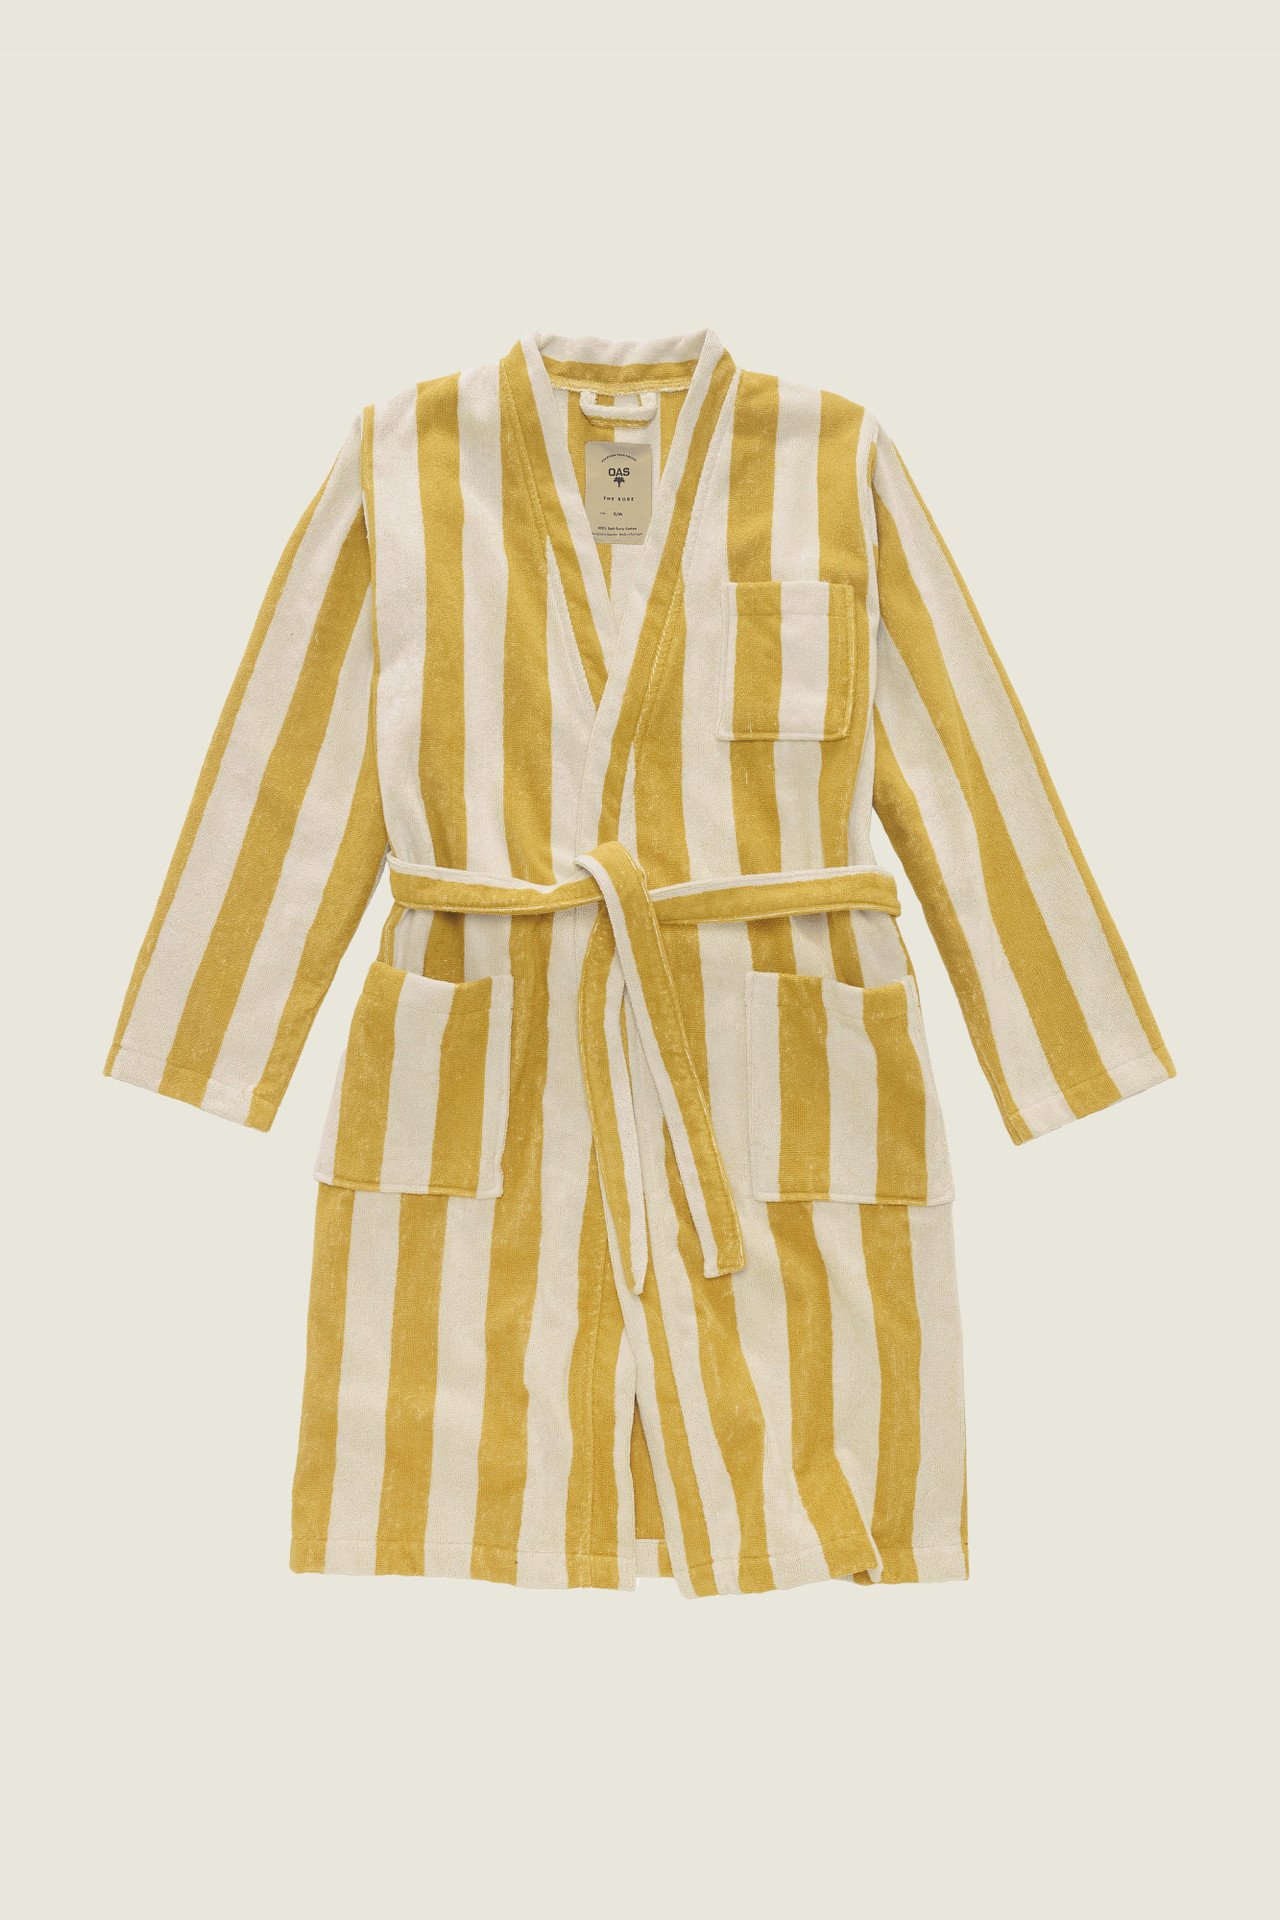 Robes for women - Buy bathrobes for women online | OAS